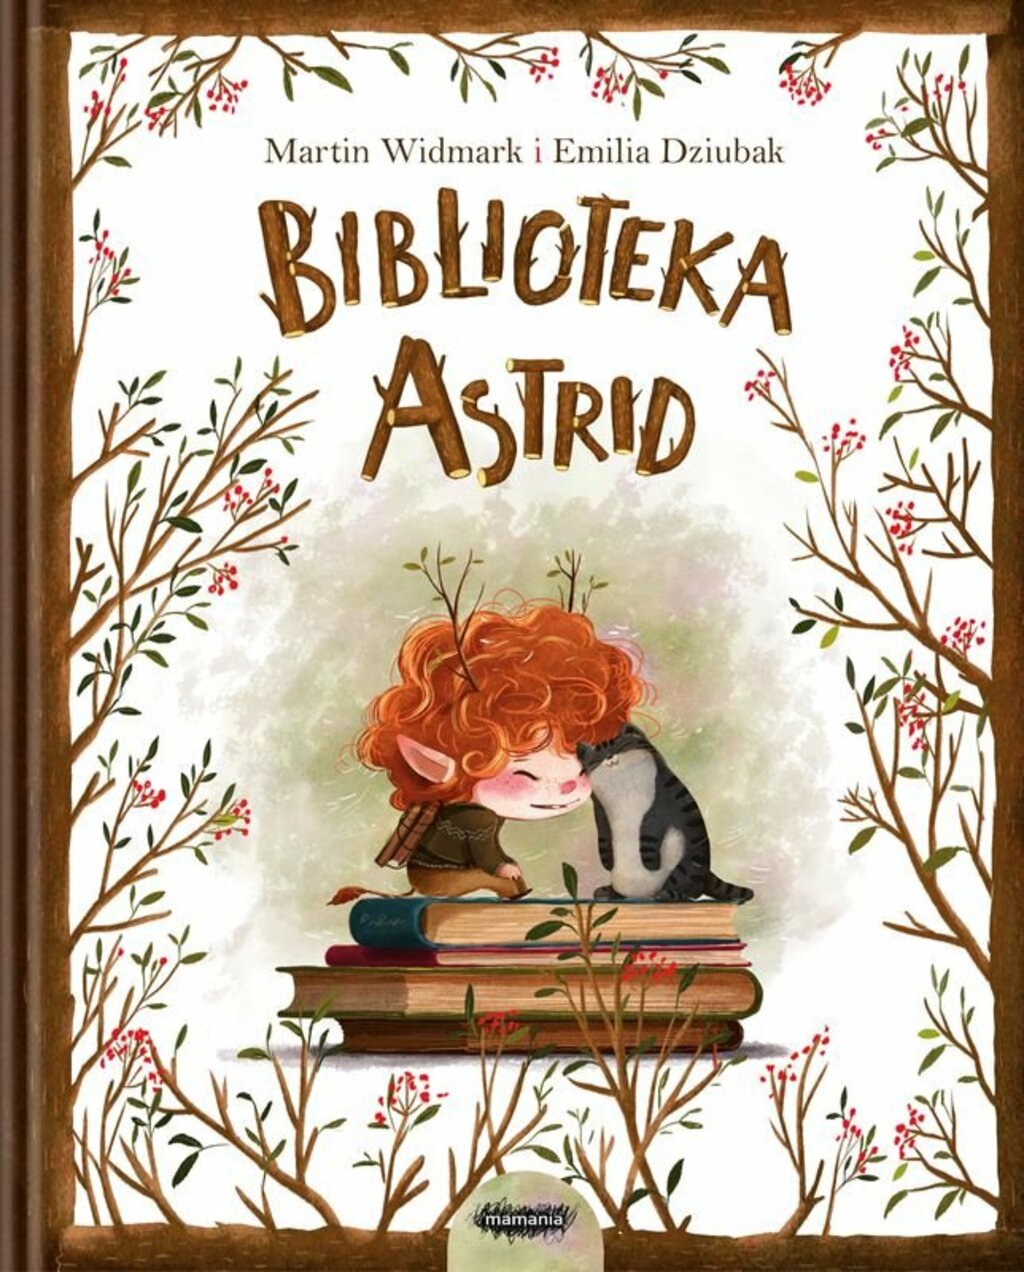 Okładka rysunkowa. Rudowłosy chłopiec z uszami elfa i mały kotek przytuleni głowami siedzą na książkach